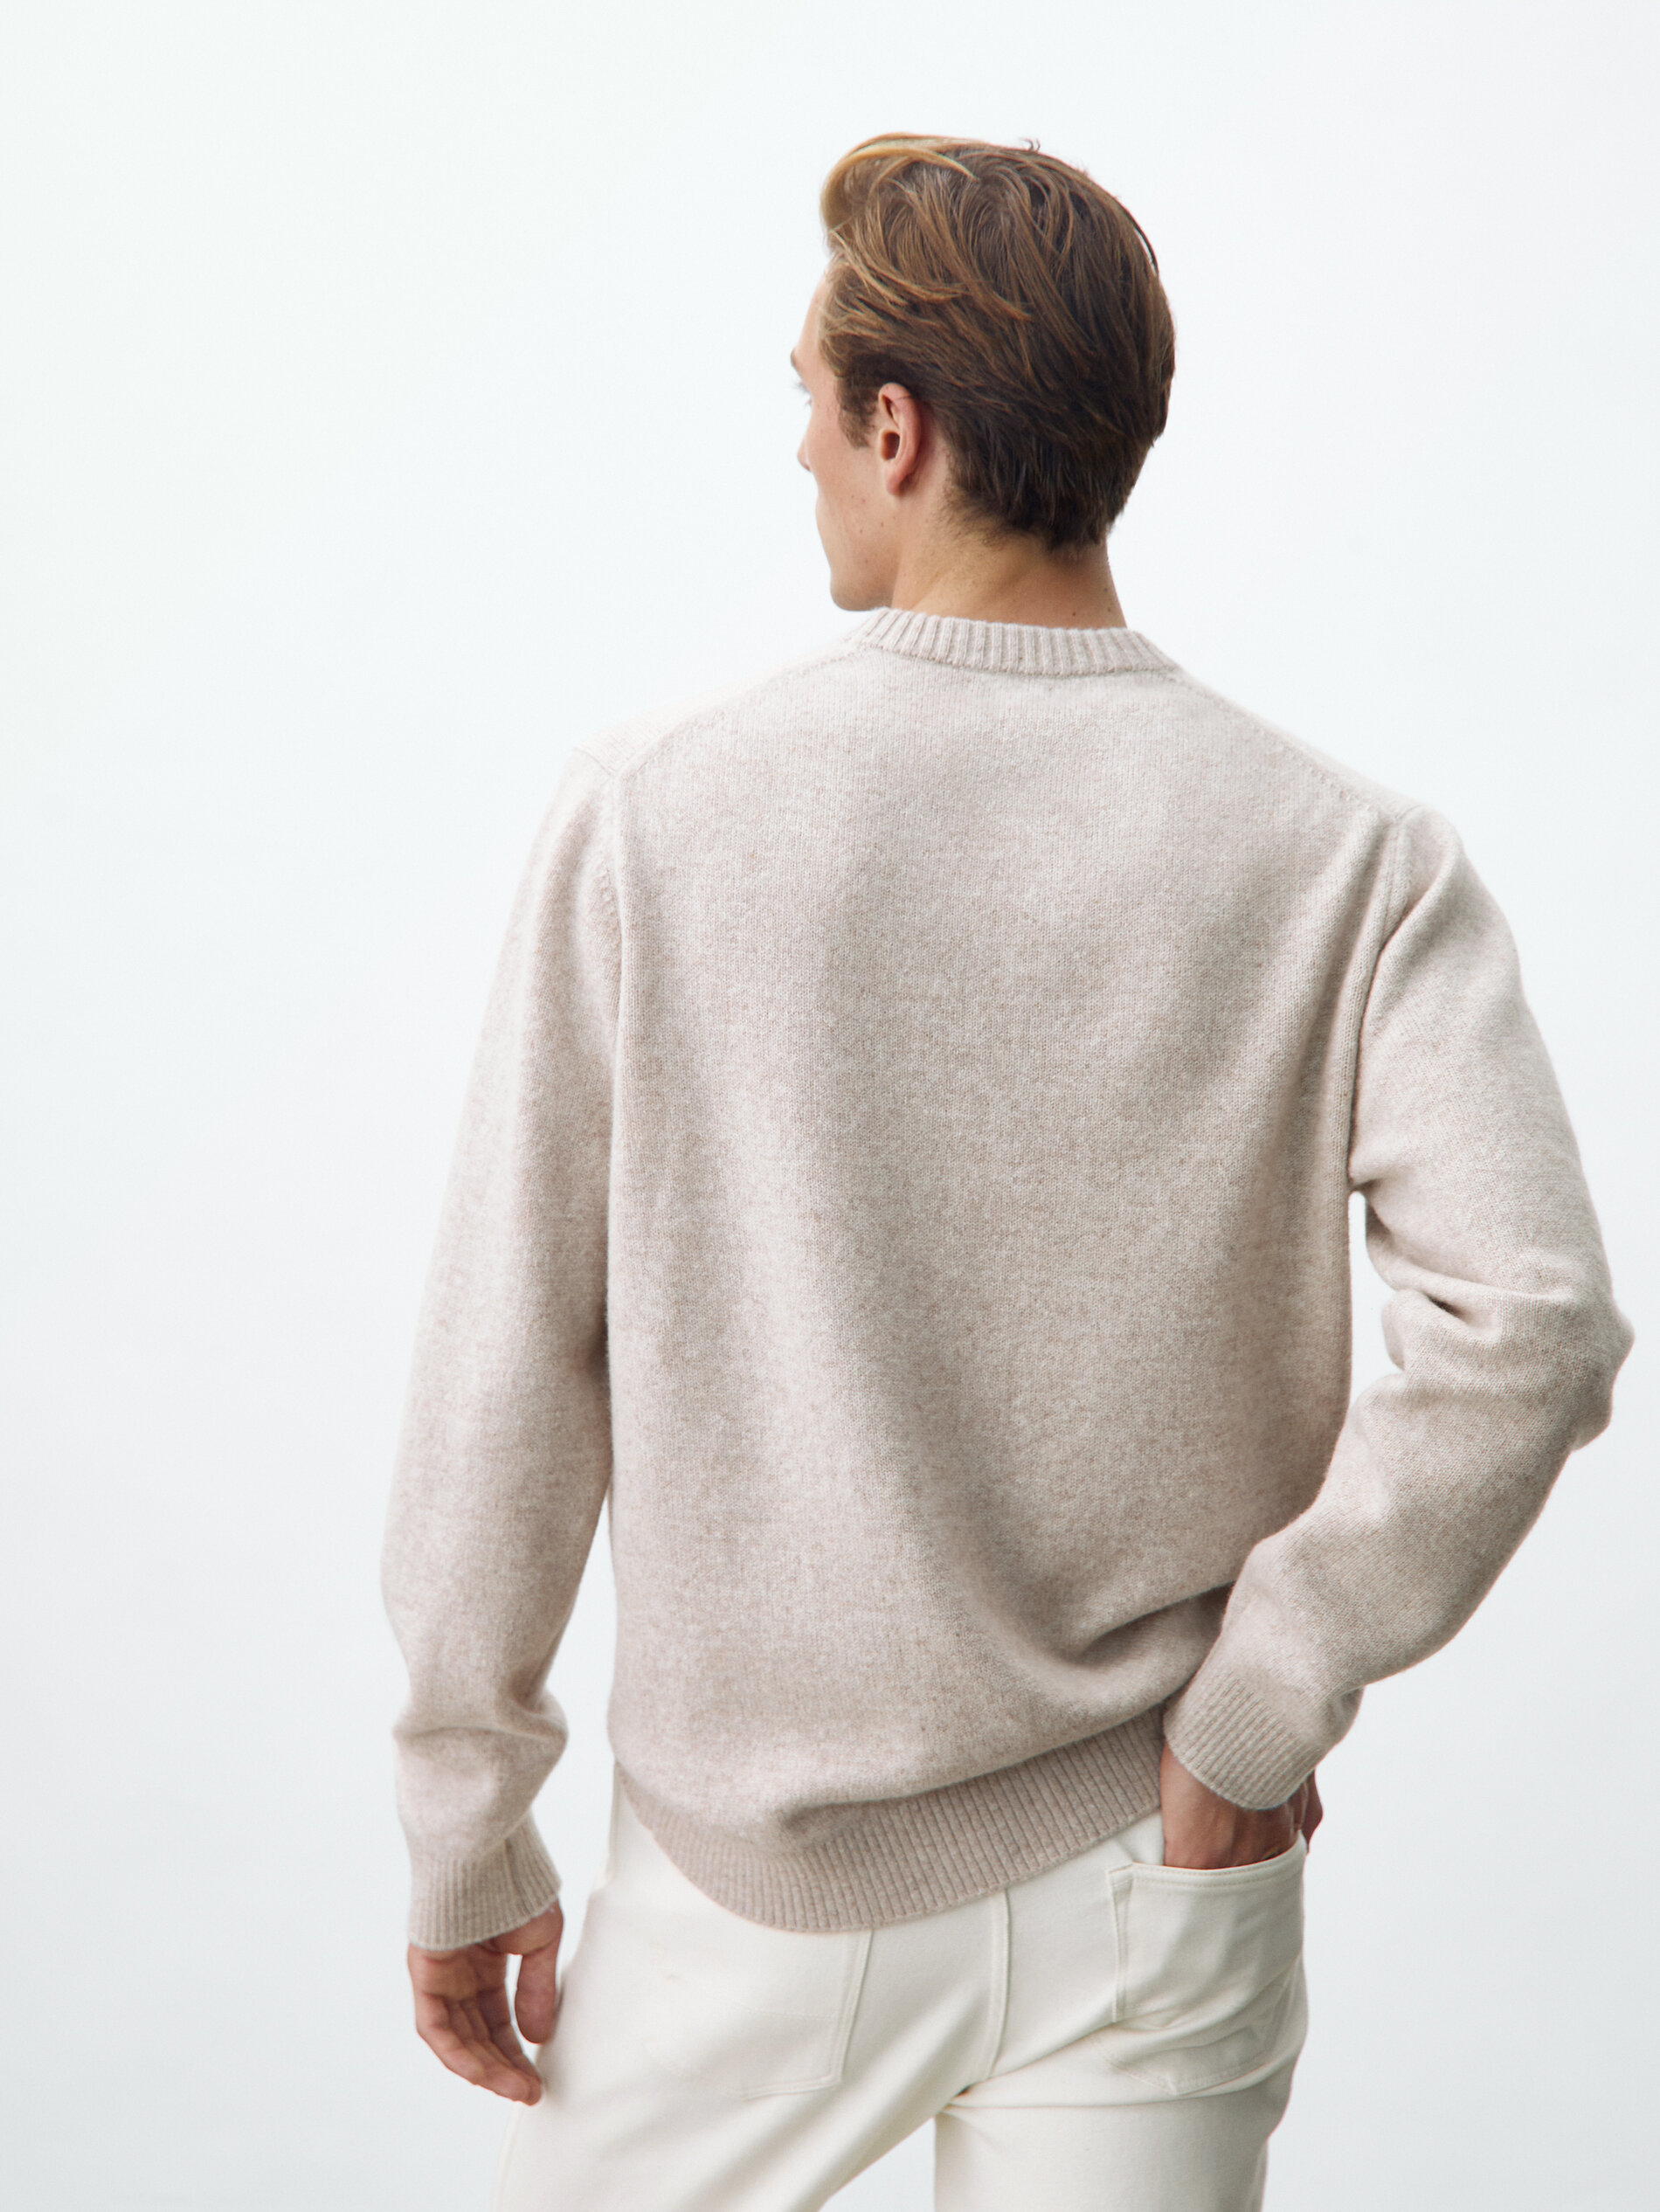 Men's Knitwear, Merino Wool Jumpers